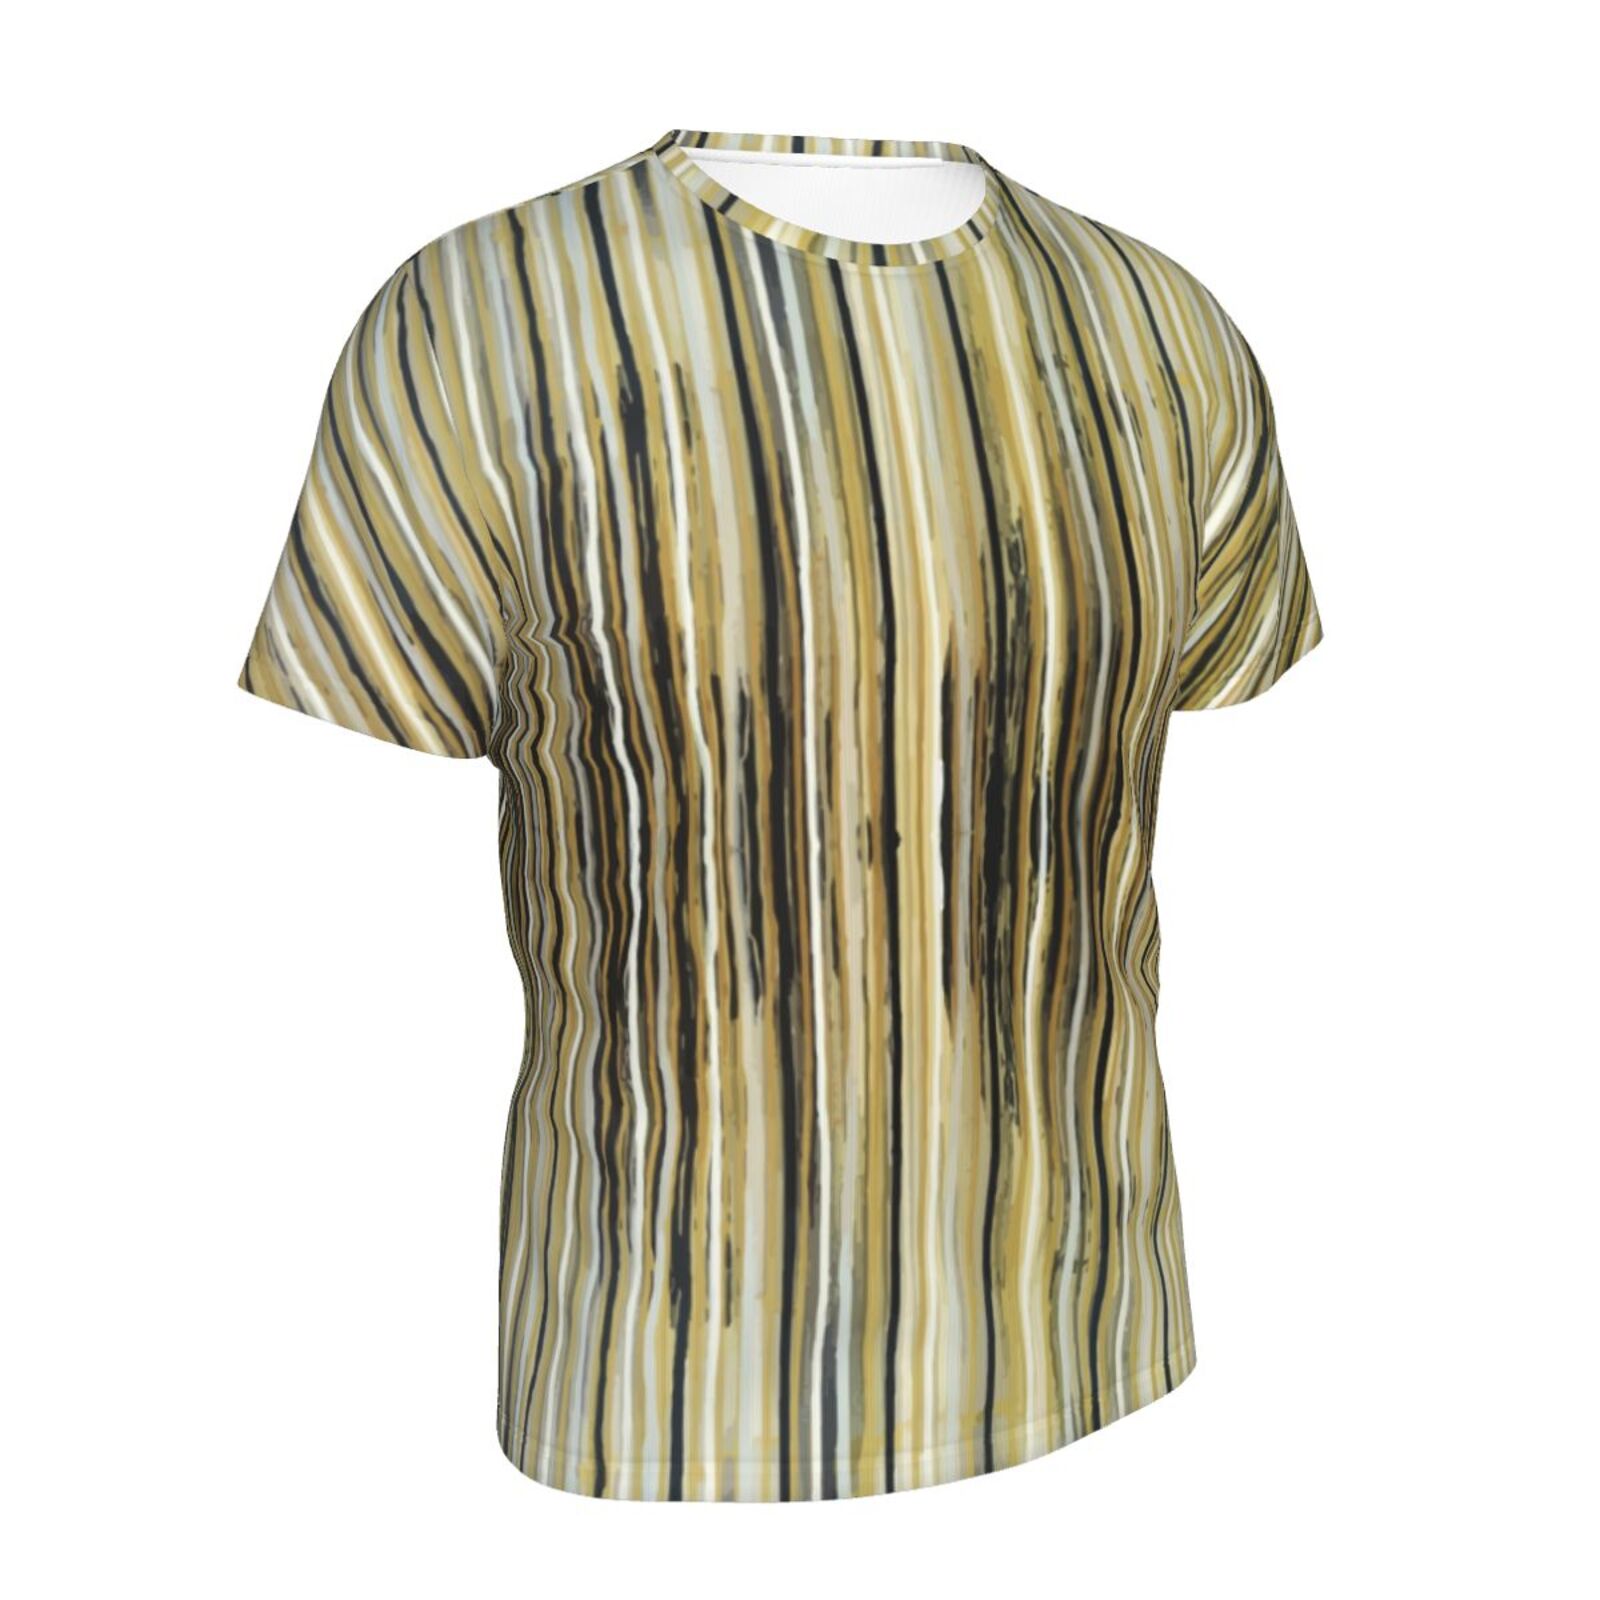 A Crush On Stripes Schilderen Elementen Klassiek T-shirt